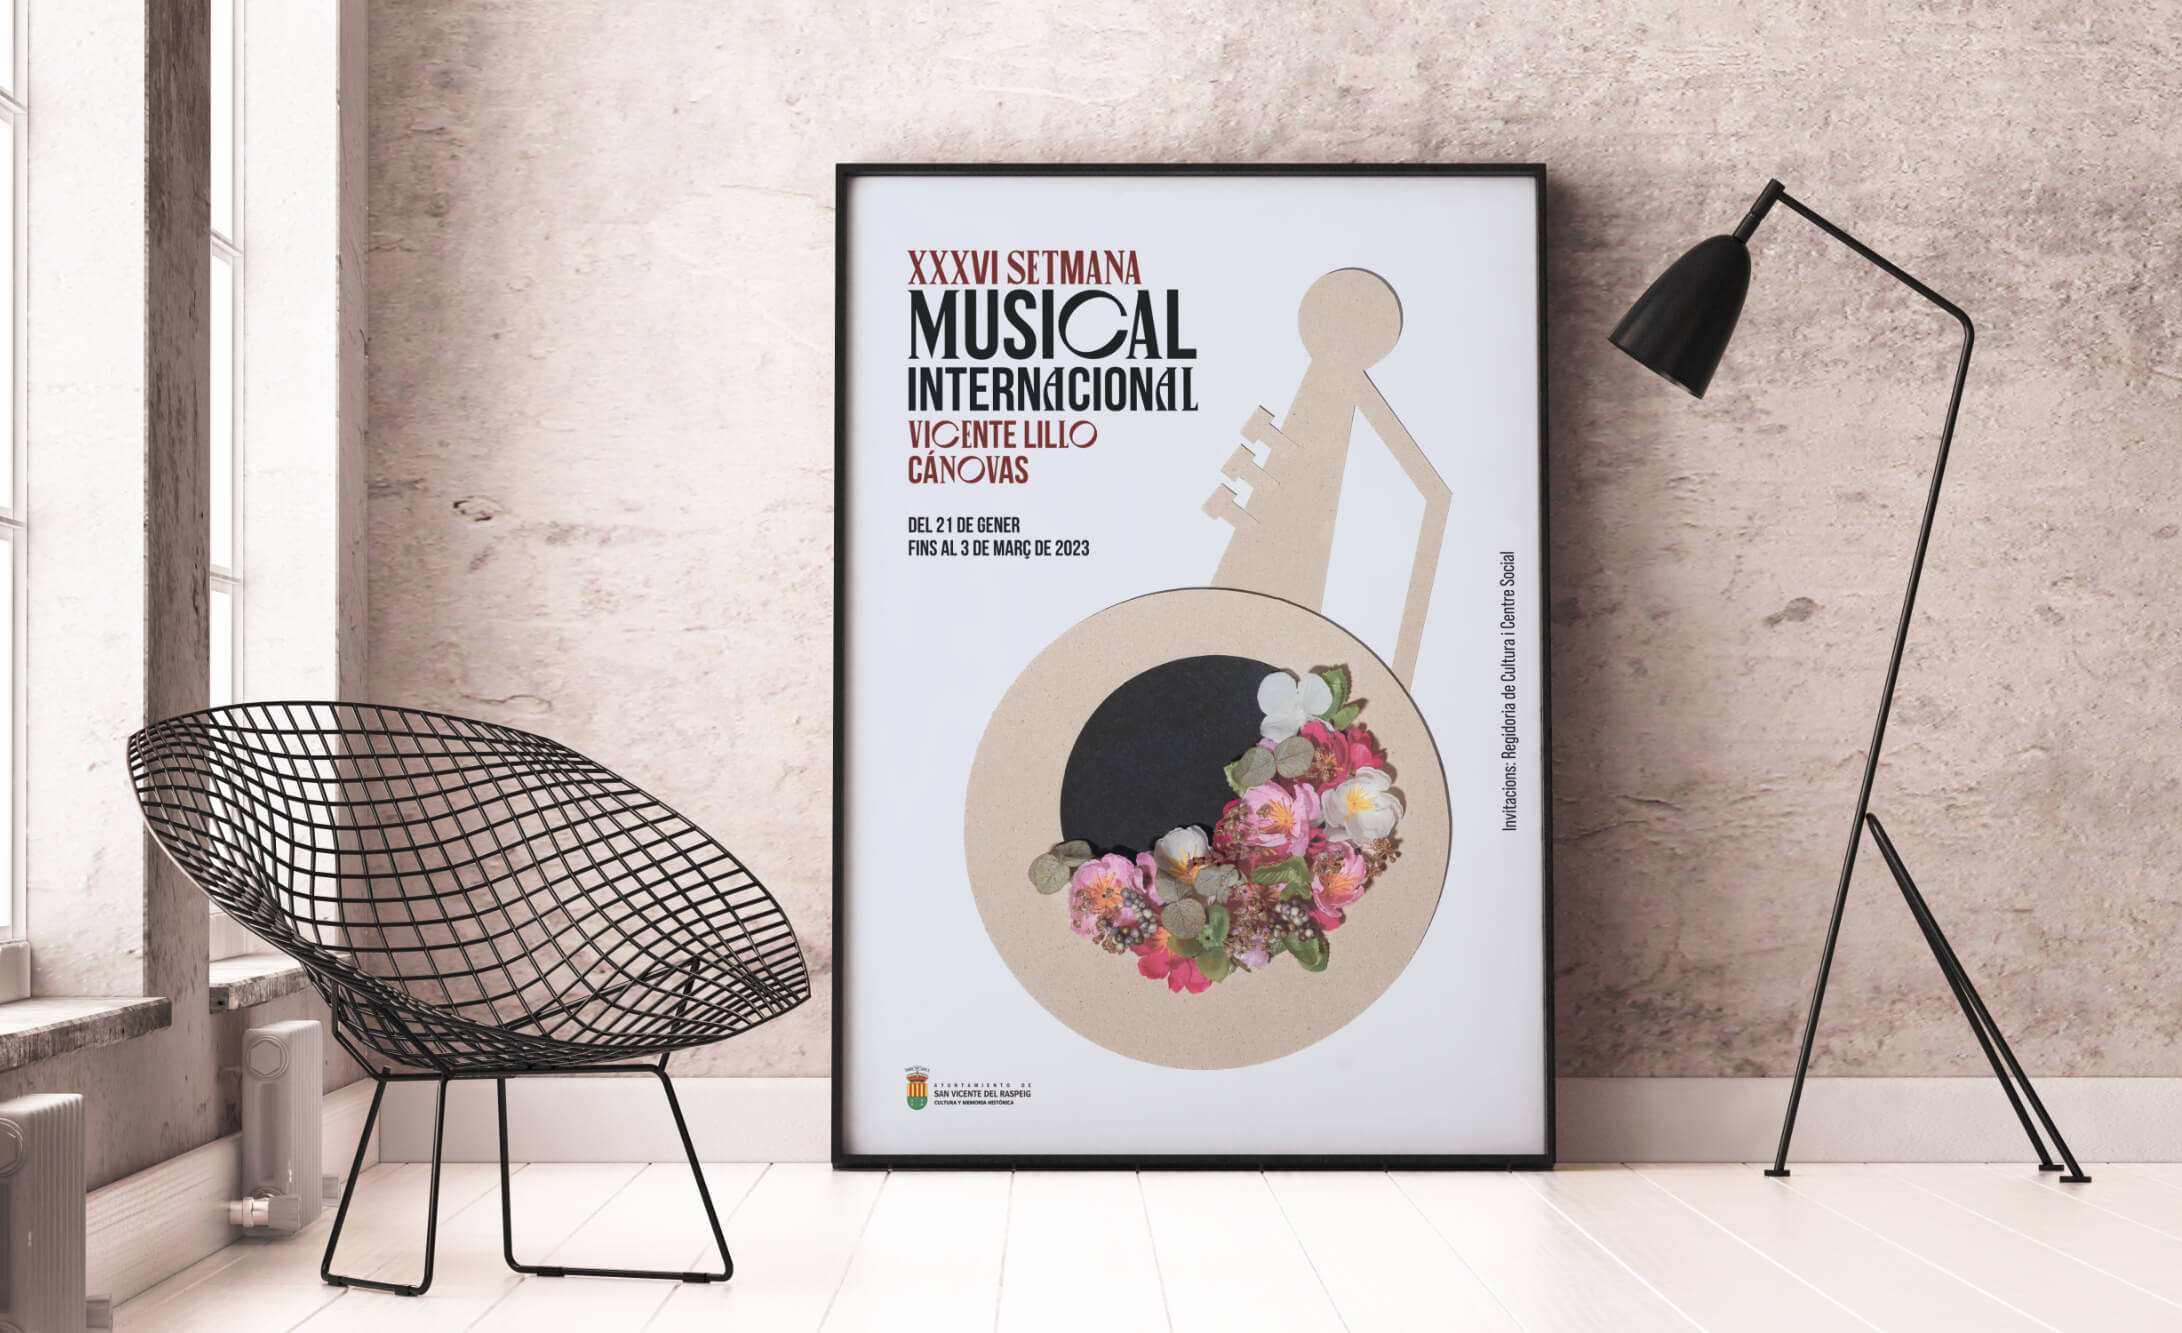 Diseño de cartelería para la XXXVI Semana Musical Internacional Vicente Lillo Cánovas.